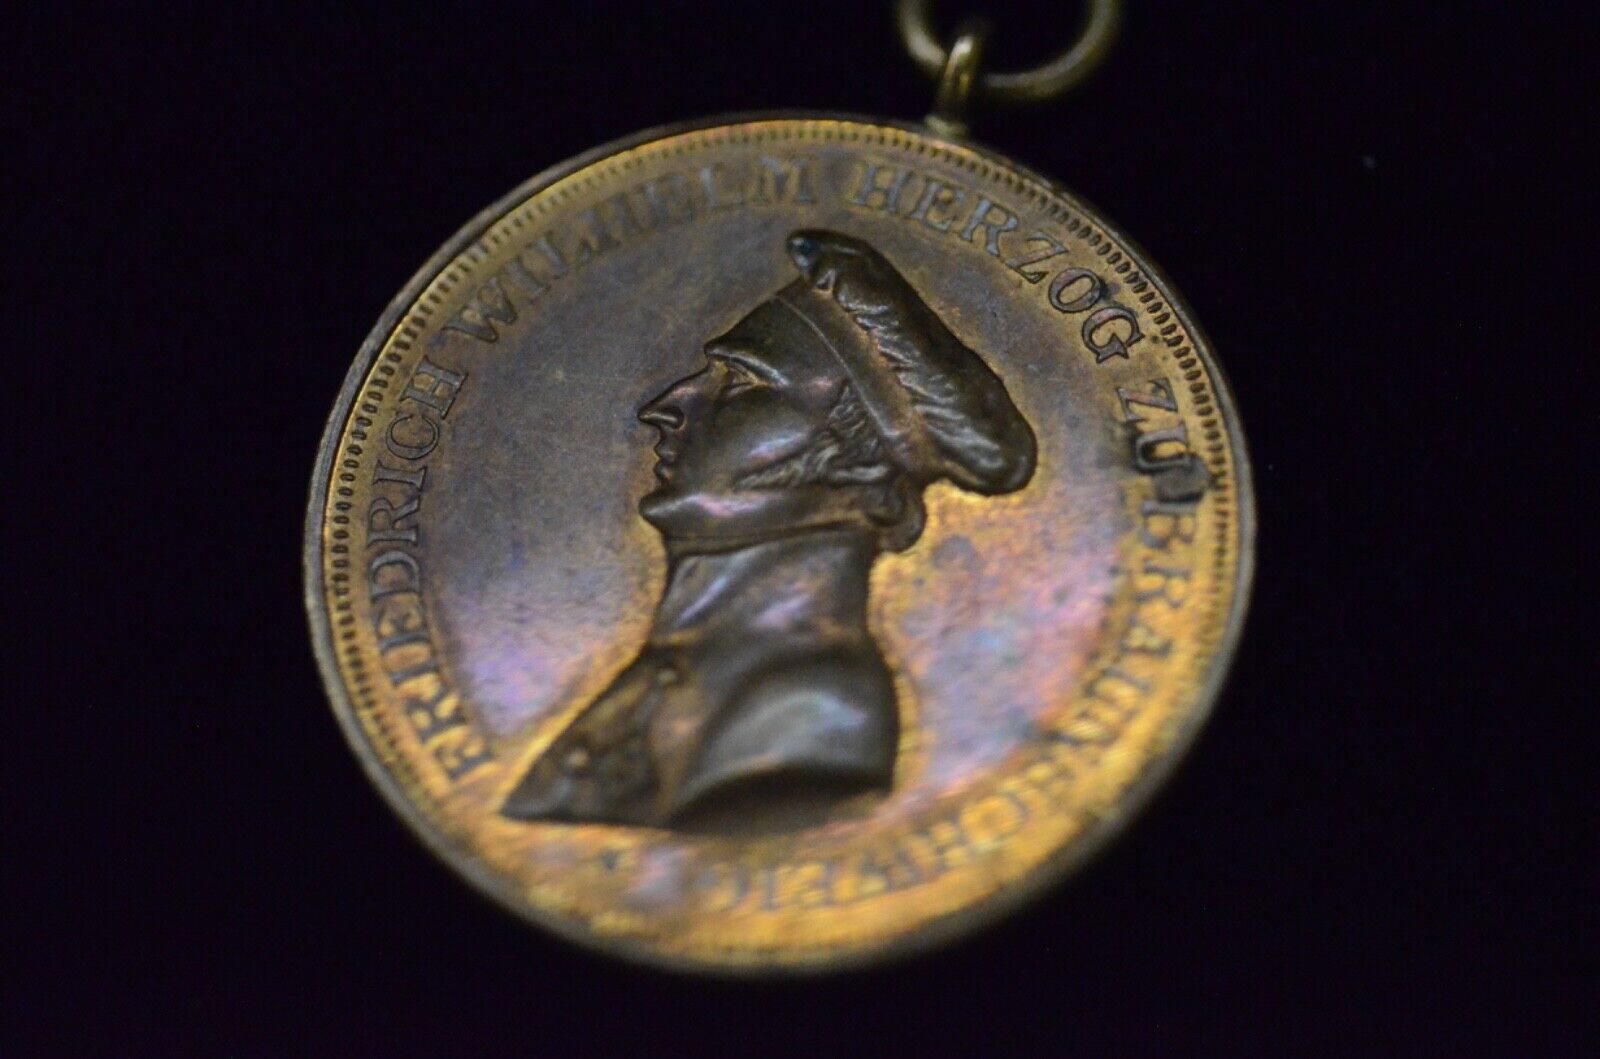 Beautiful Brunswick Peninsular War Medal